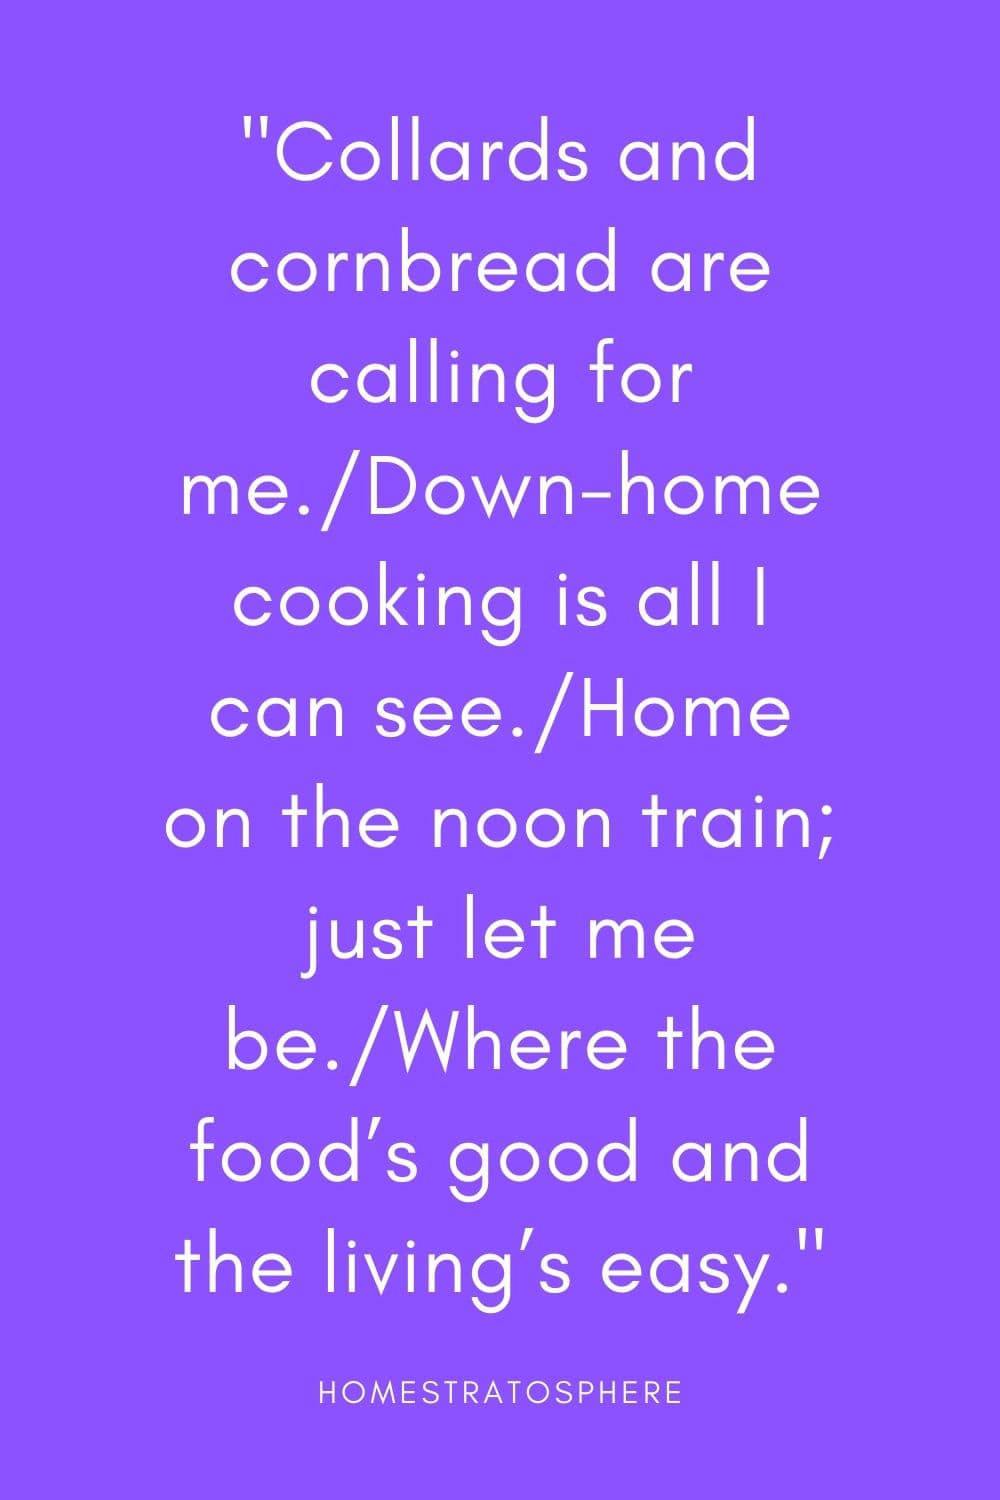 “羽衣甘蓝和玉米面包在叫我。/我能看到的只有家常菜。/乘中午的火车回家;让我自己去吧。/那里的食物很好，生活很轻松。”